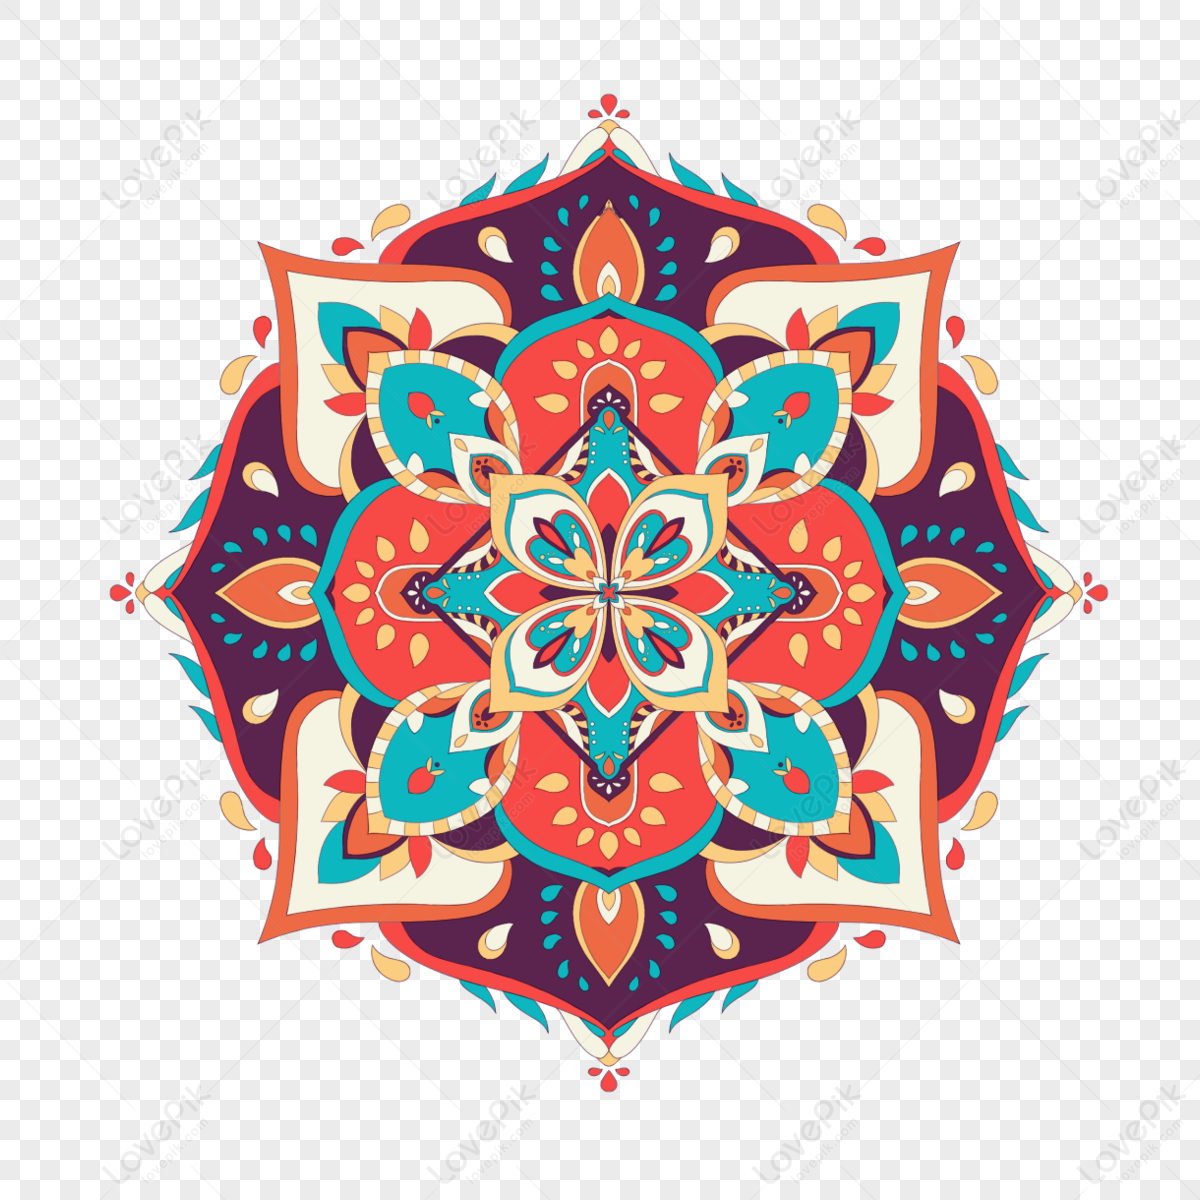 Colori Brillanti Mandala Design Per La Stampa EPS Immagine Gratis, Grafica  download su Lovepik